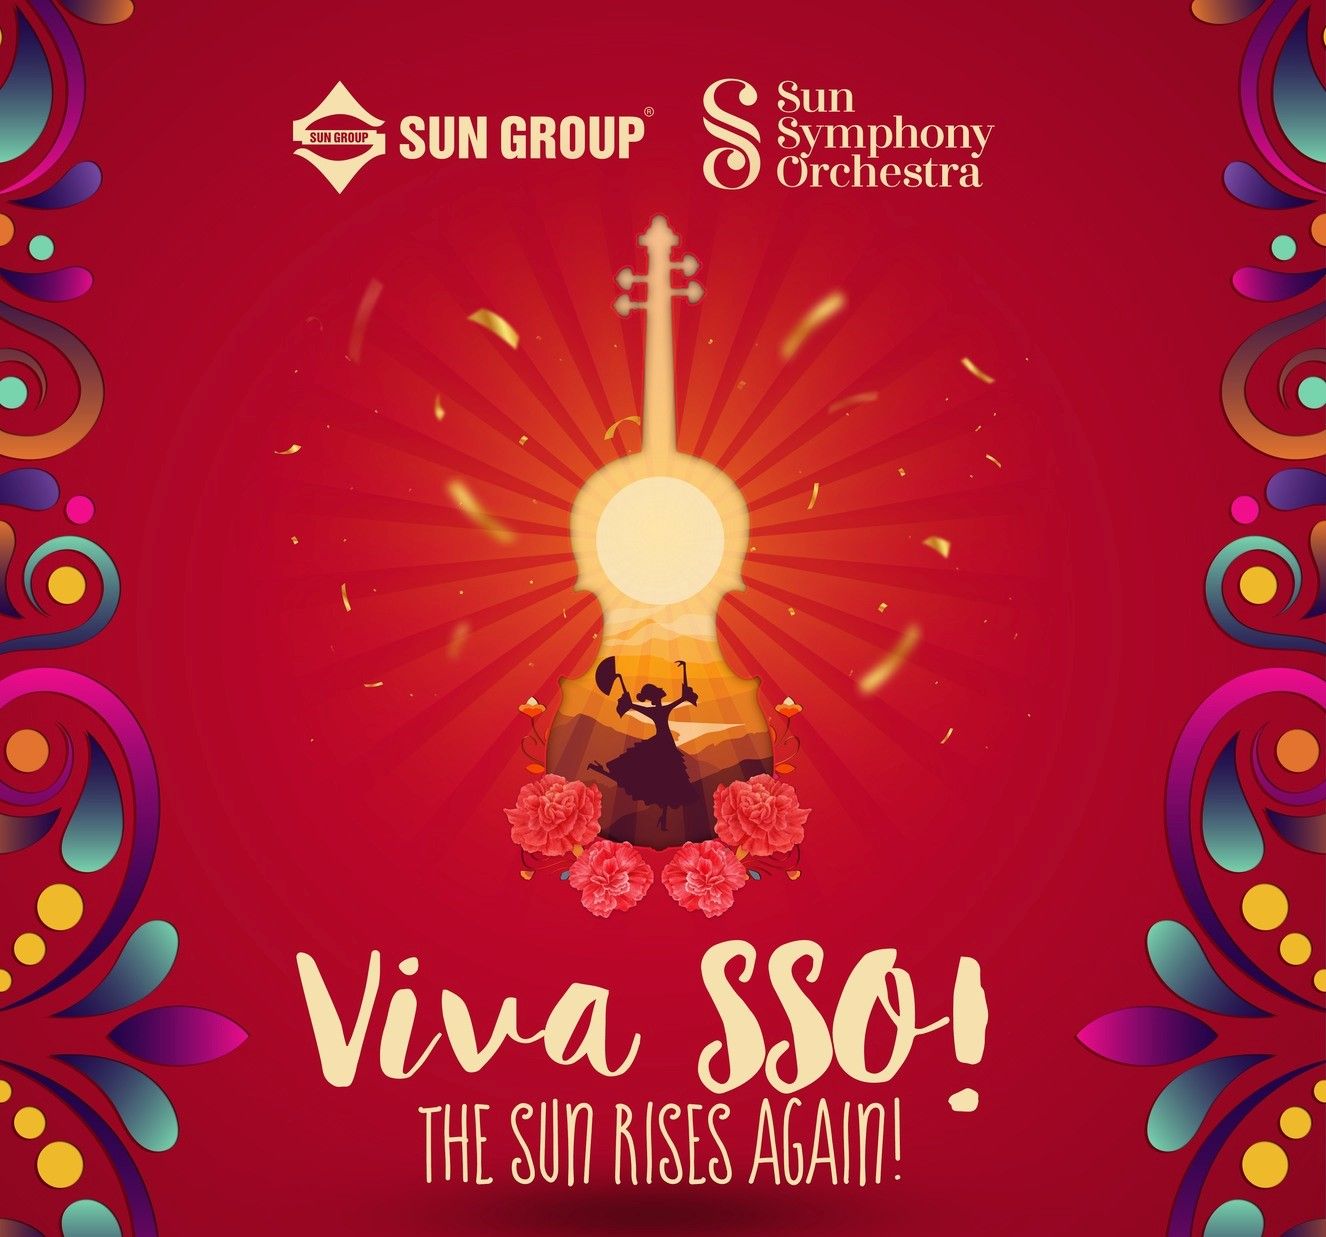 Dàn nhạc giao hưởng Mặt Trời chính thức trở lại với đêm nhạc Viva SSO: The Sun rises again